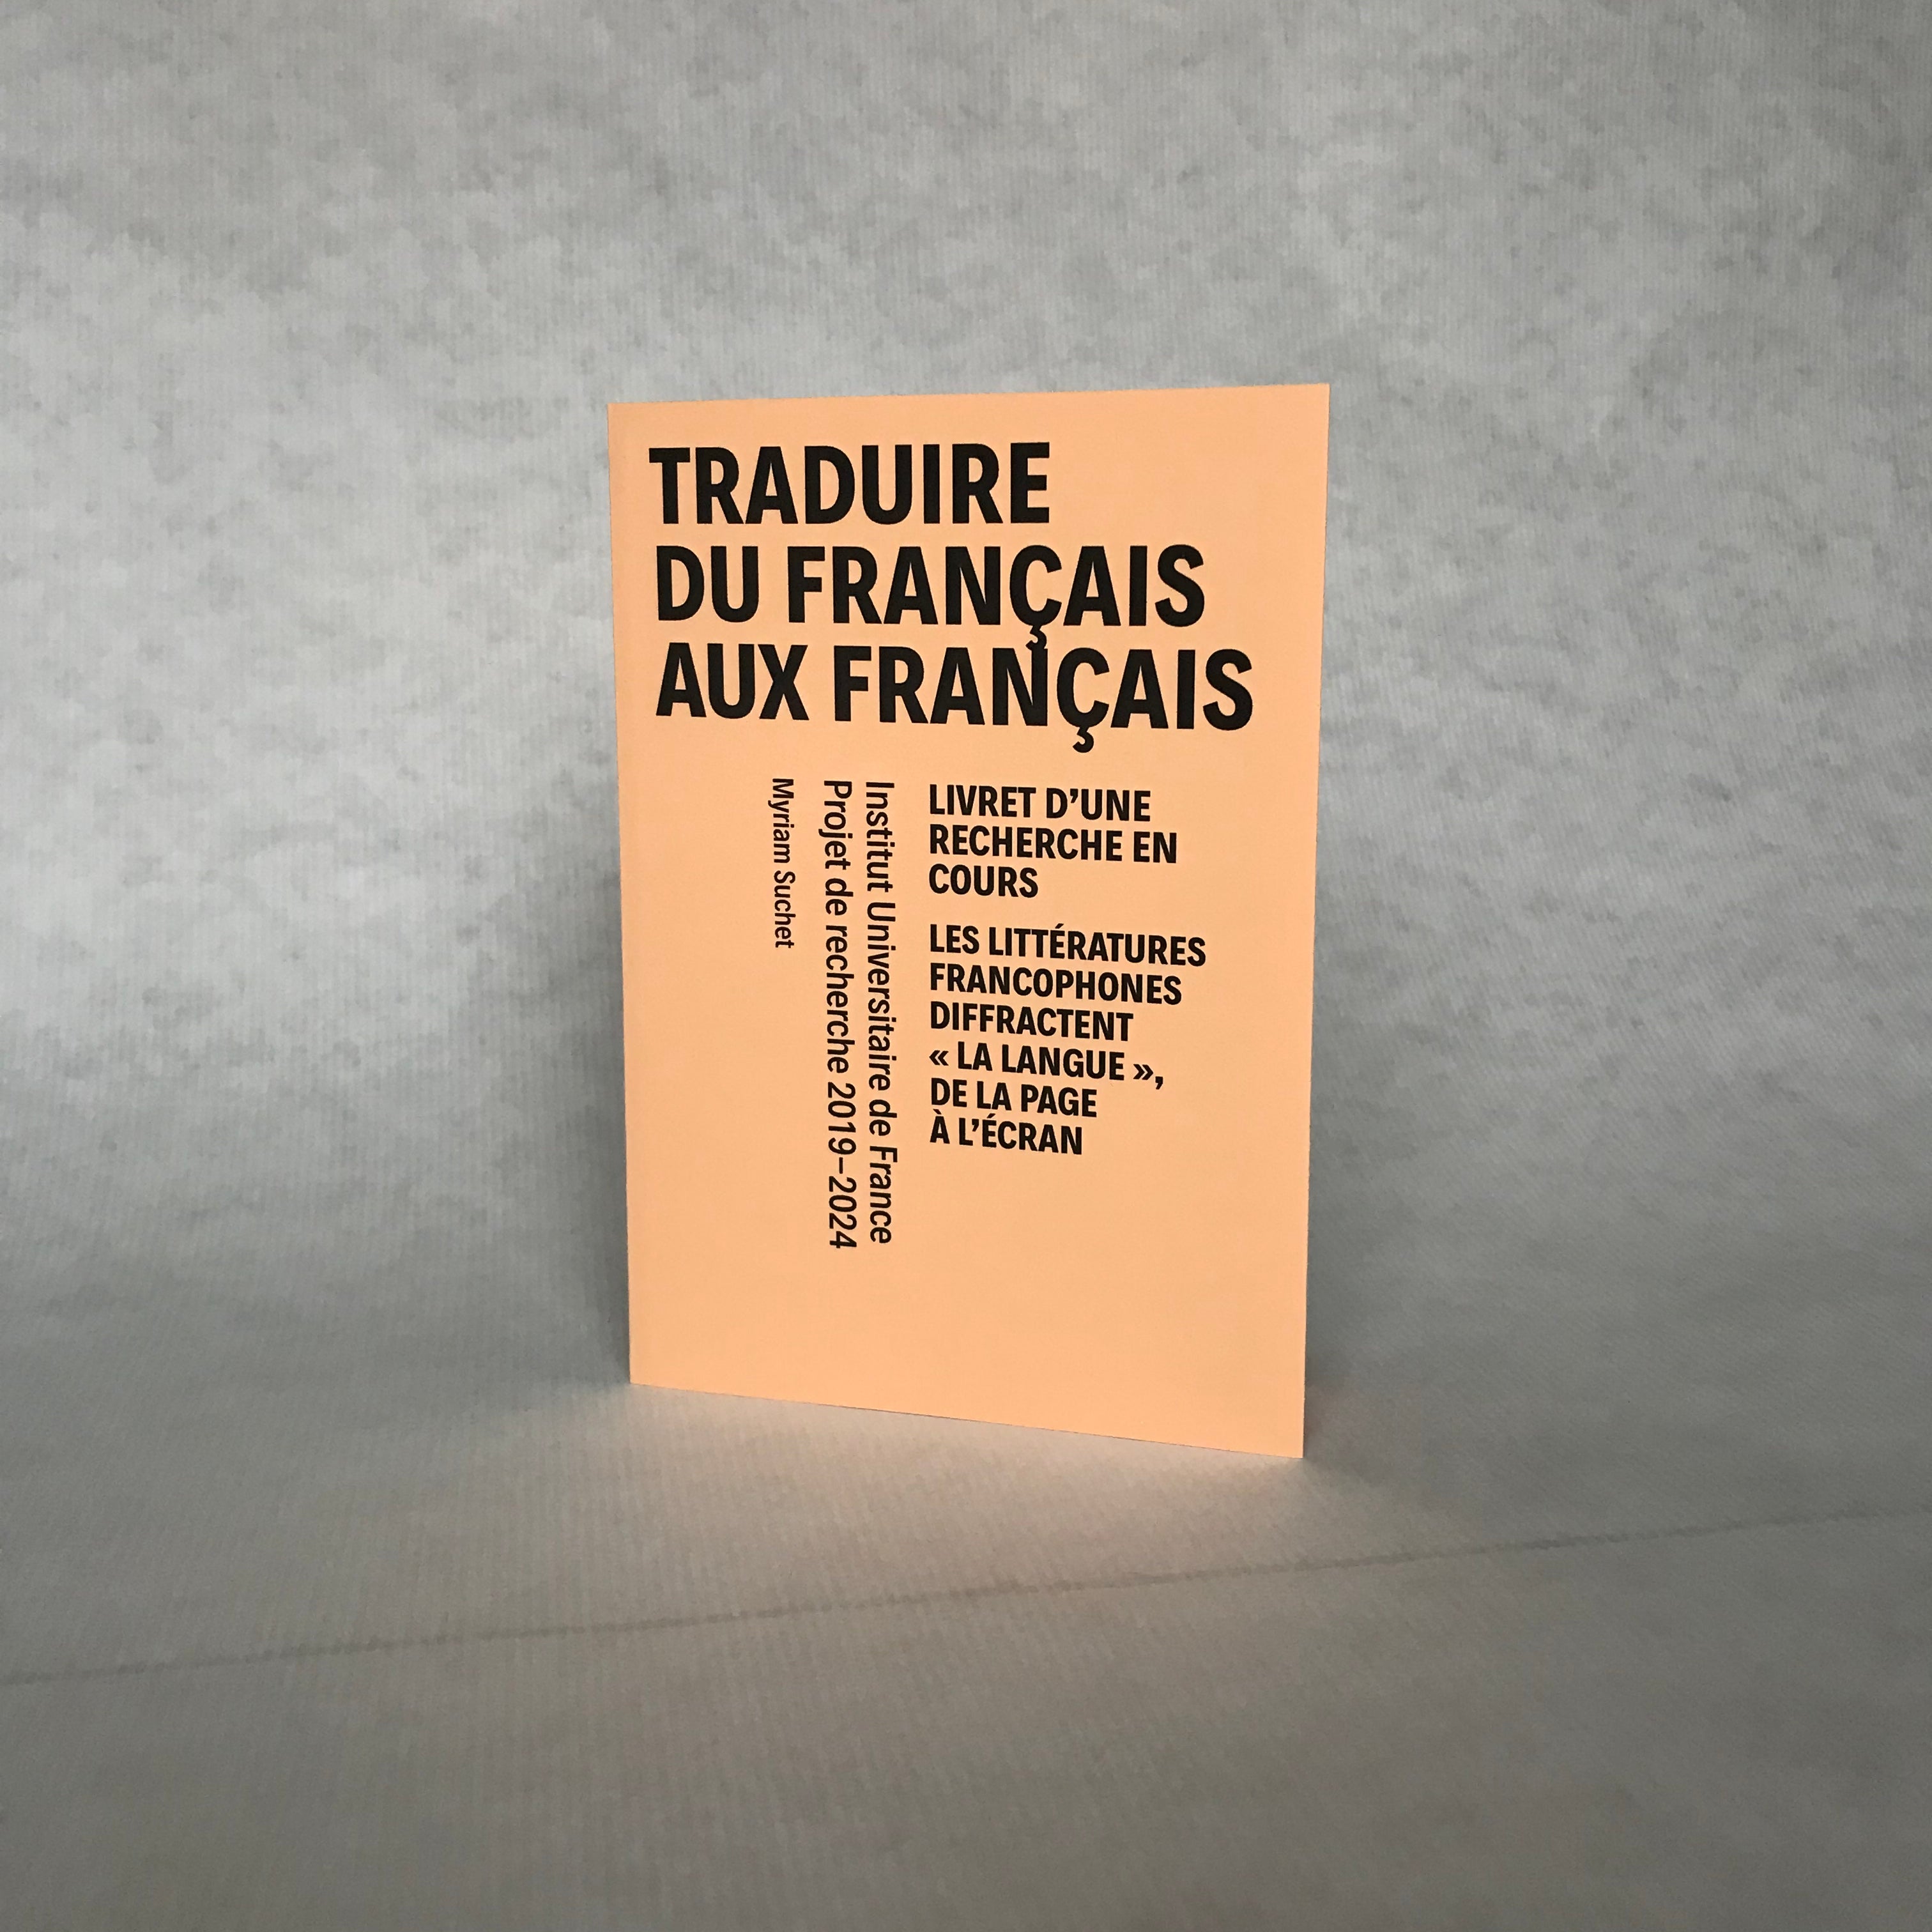 Traduire du français aux français est disponible